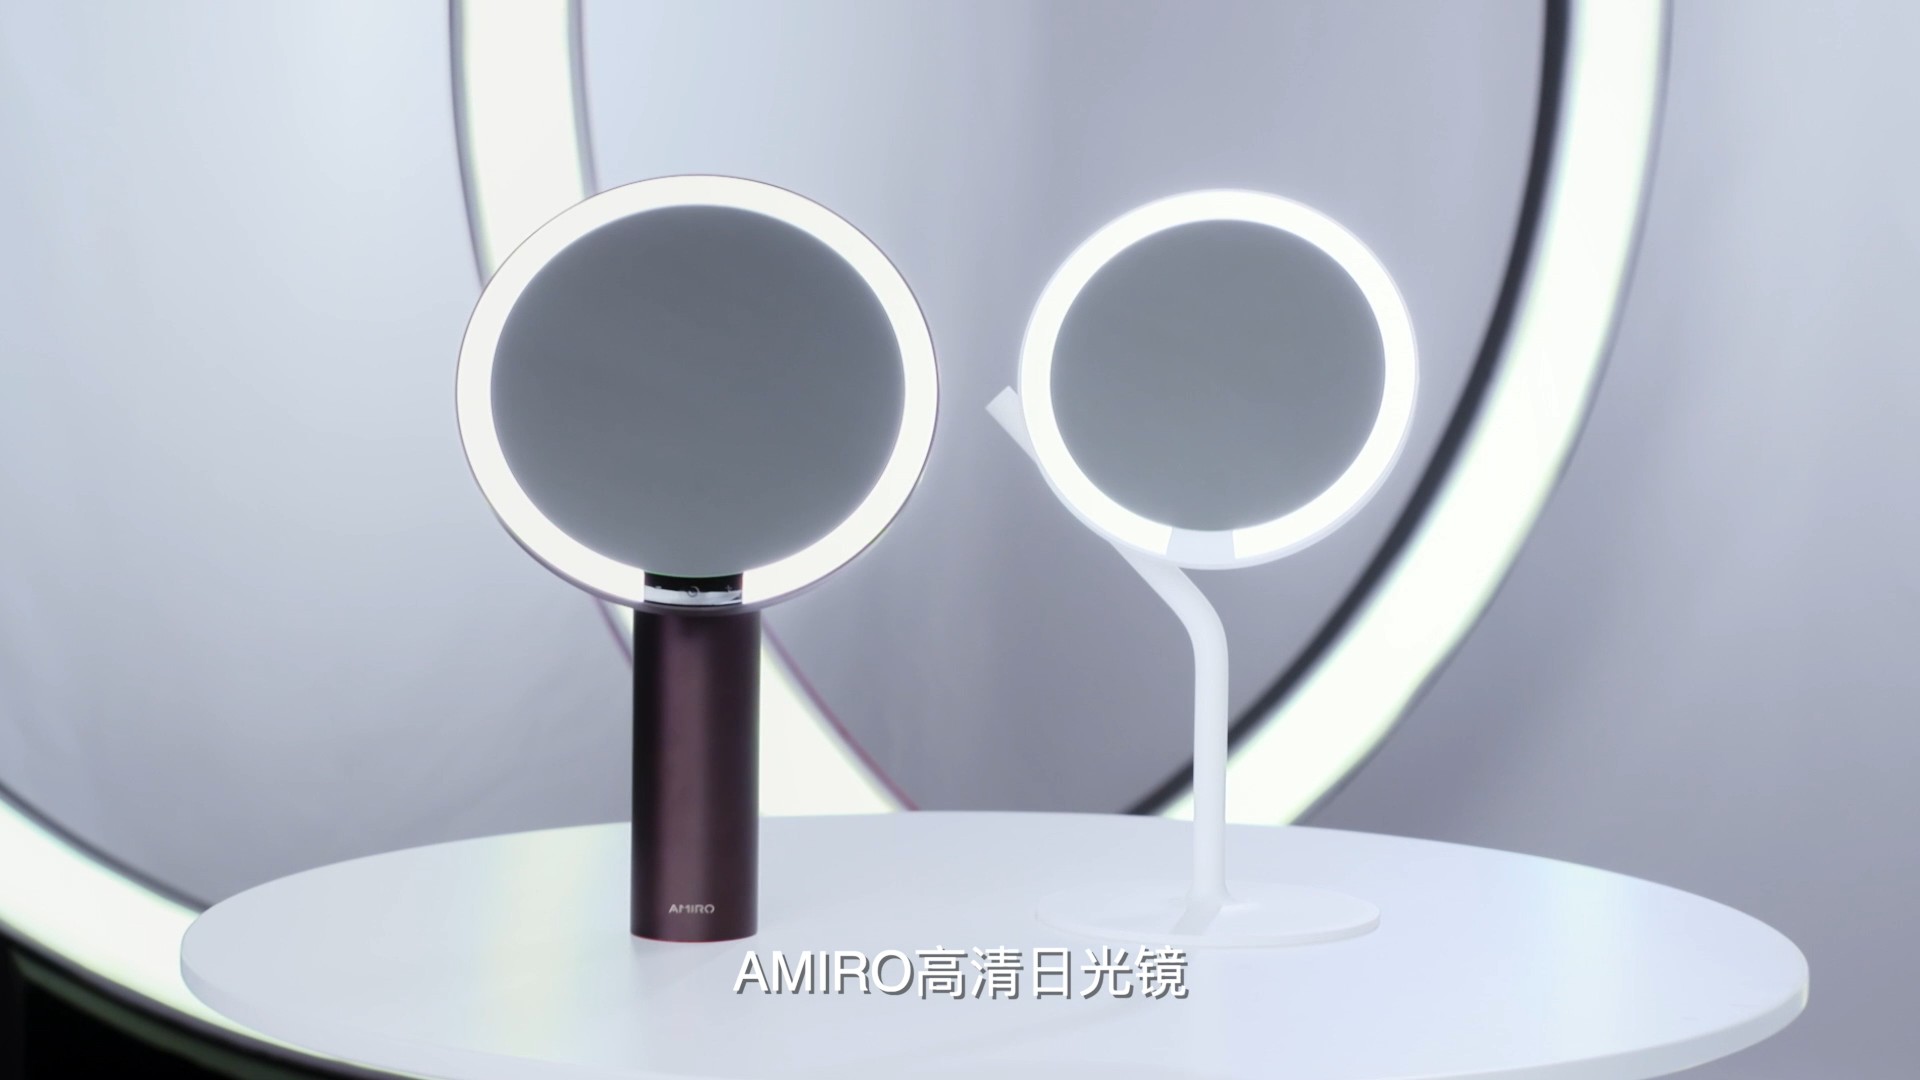 明星化妆师俞培焰谈AMIRO化妆镜 用光赋予彩妆更多美感